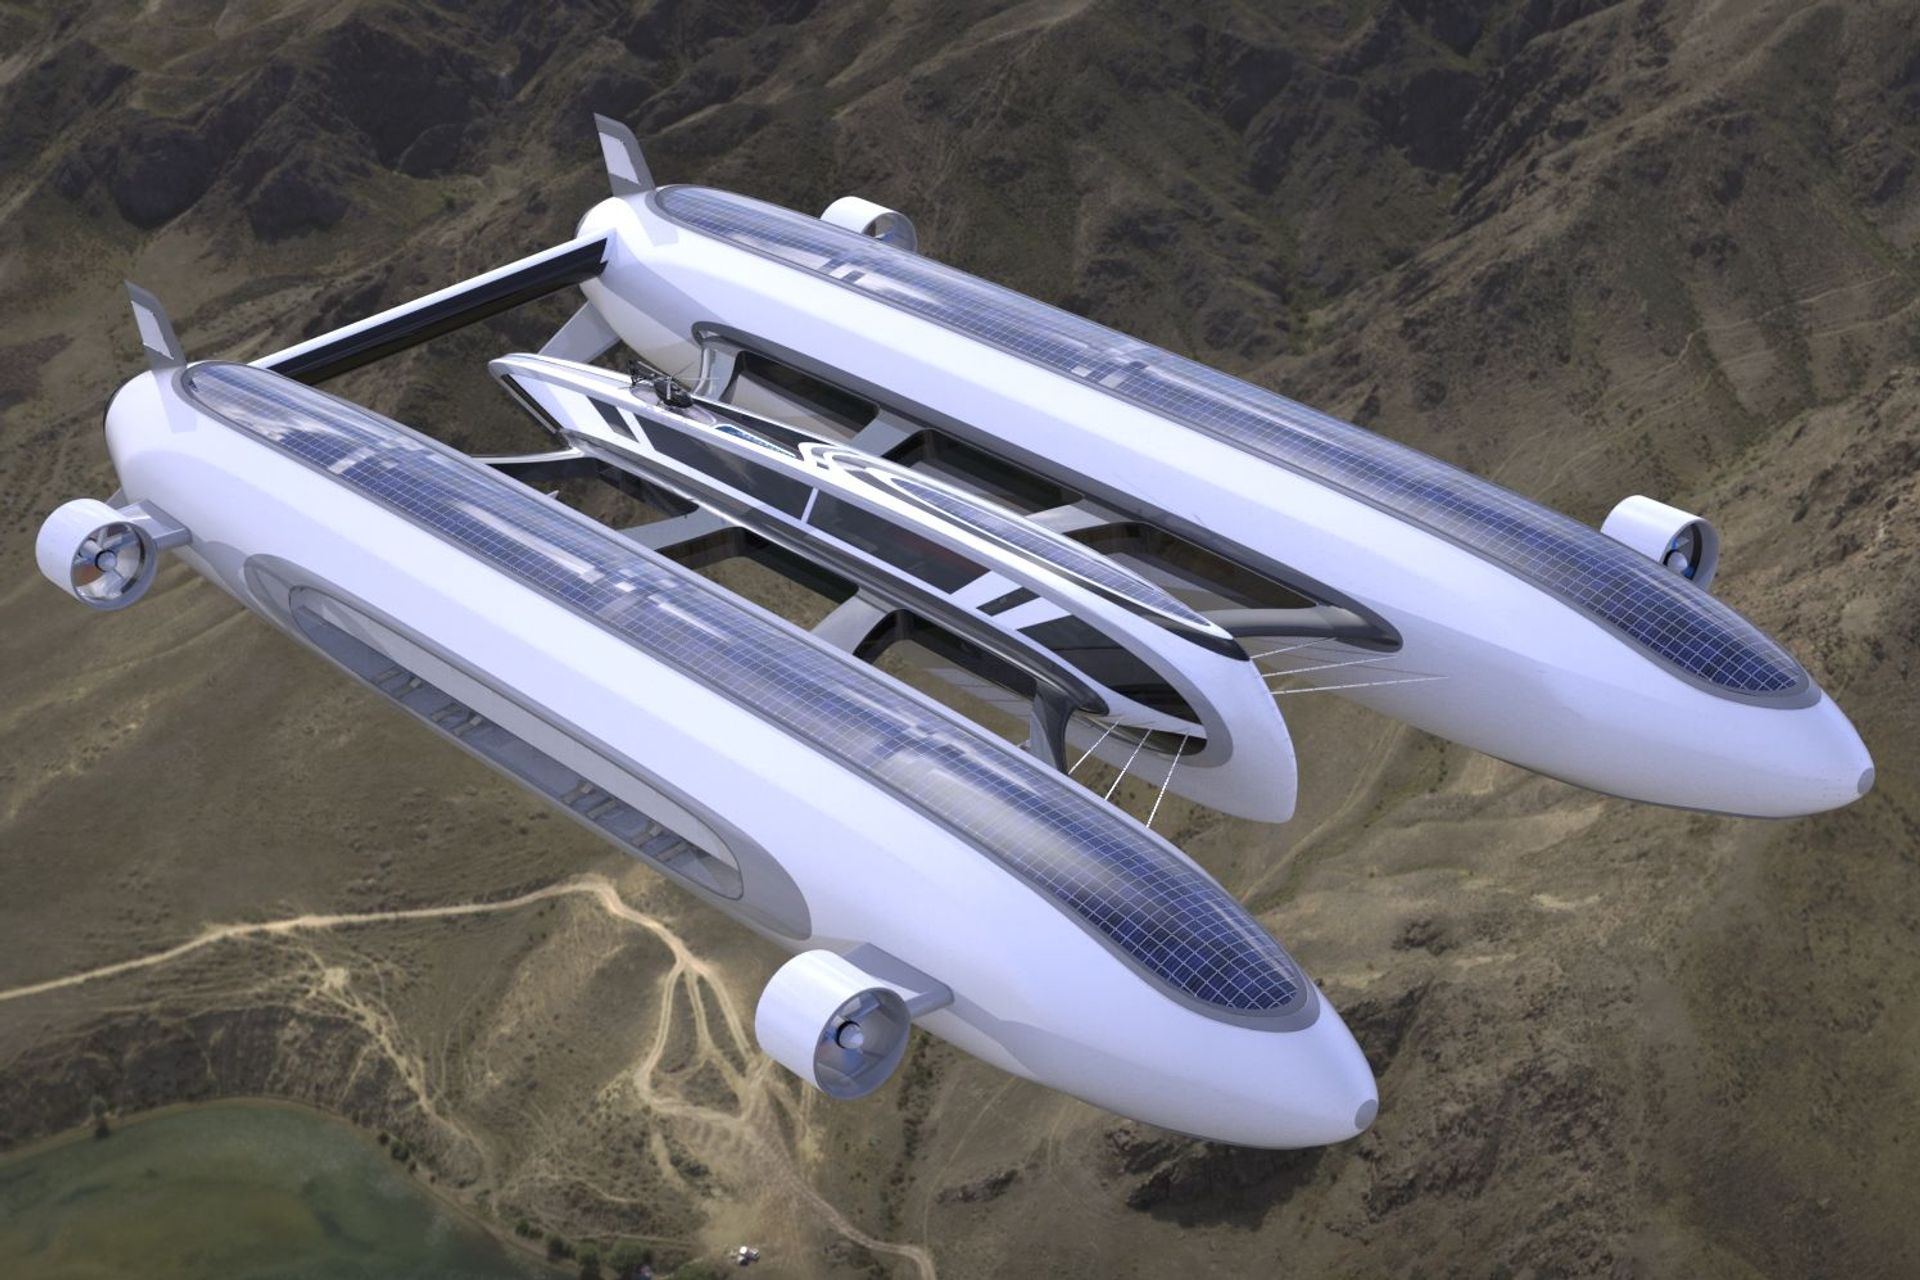 El concepte "Sky Yacht" desenvolupat per l'estudi de disseny Lazzarini per a una mobilitat aèria i aquàtica sostenible